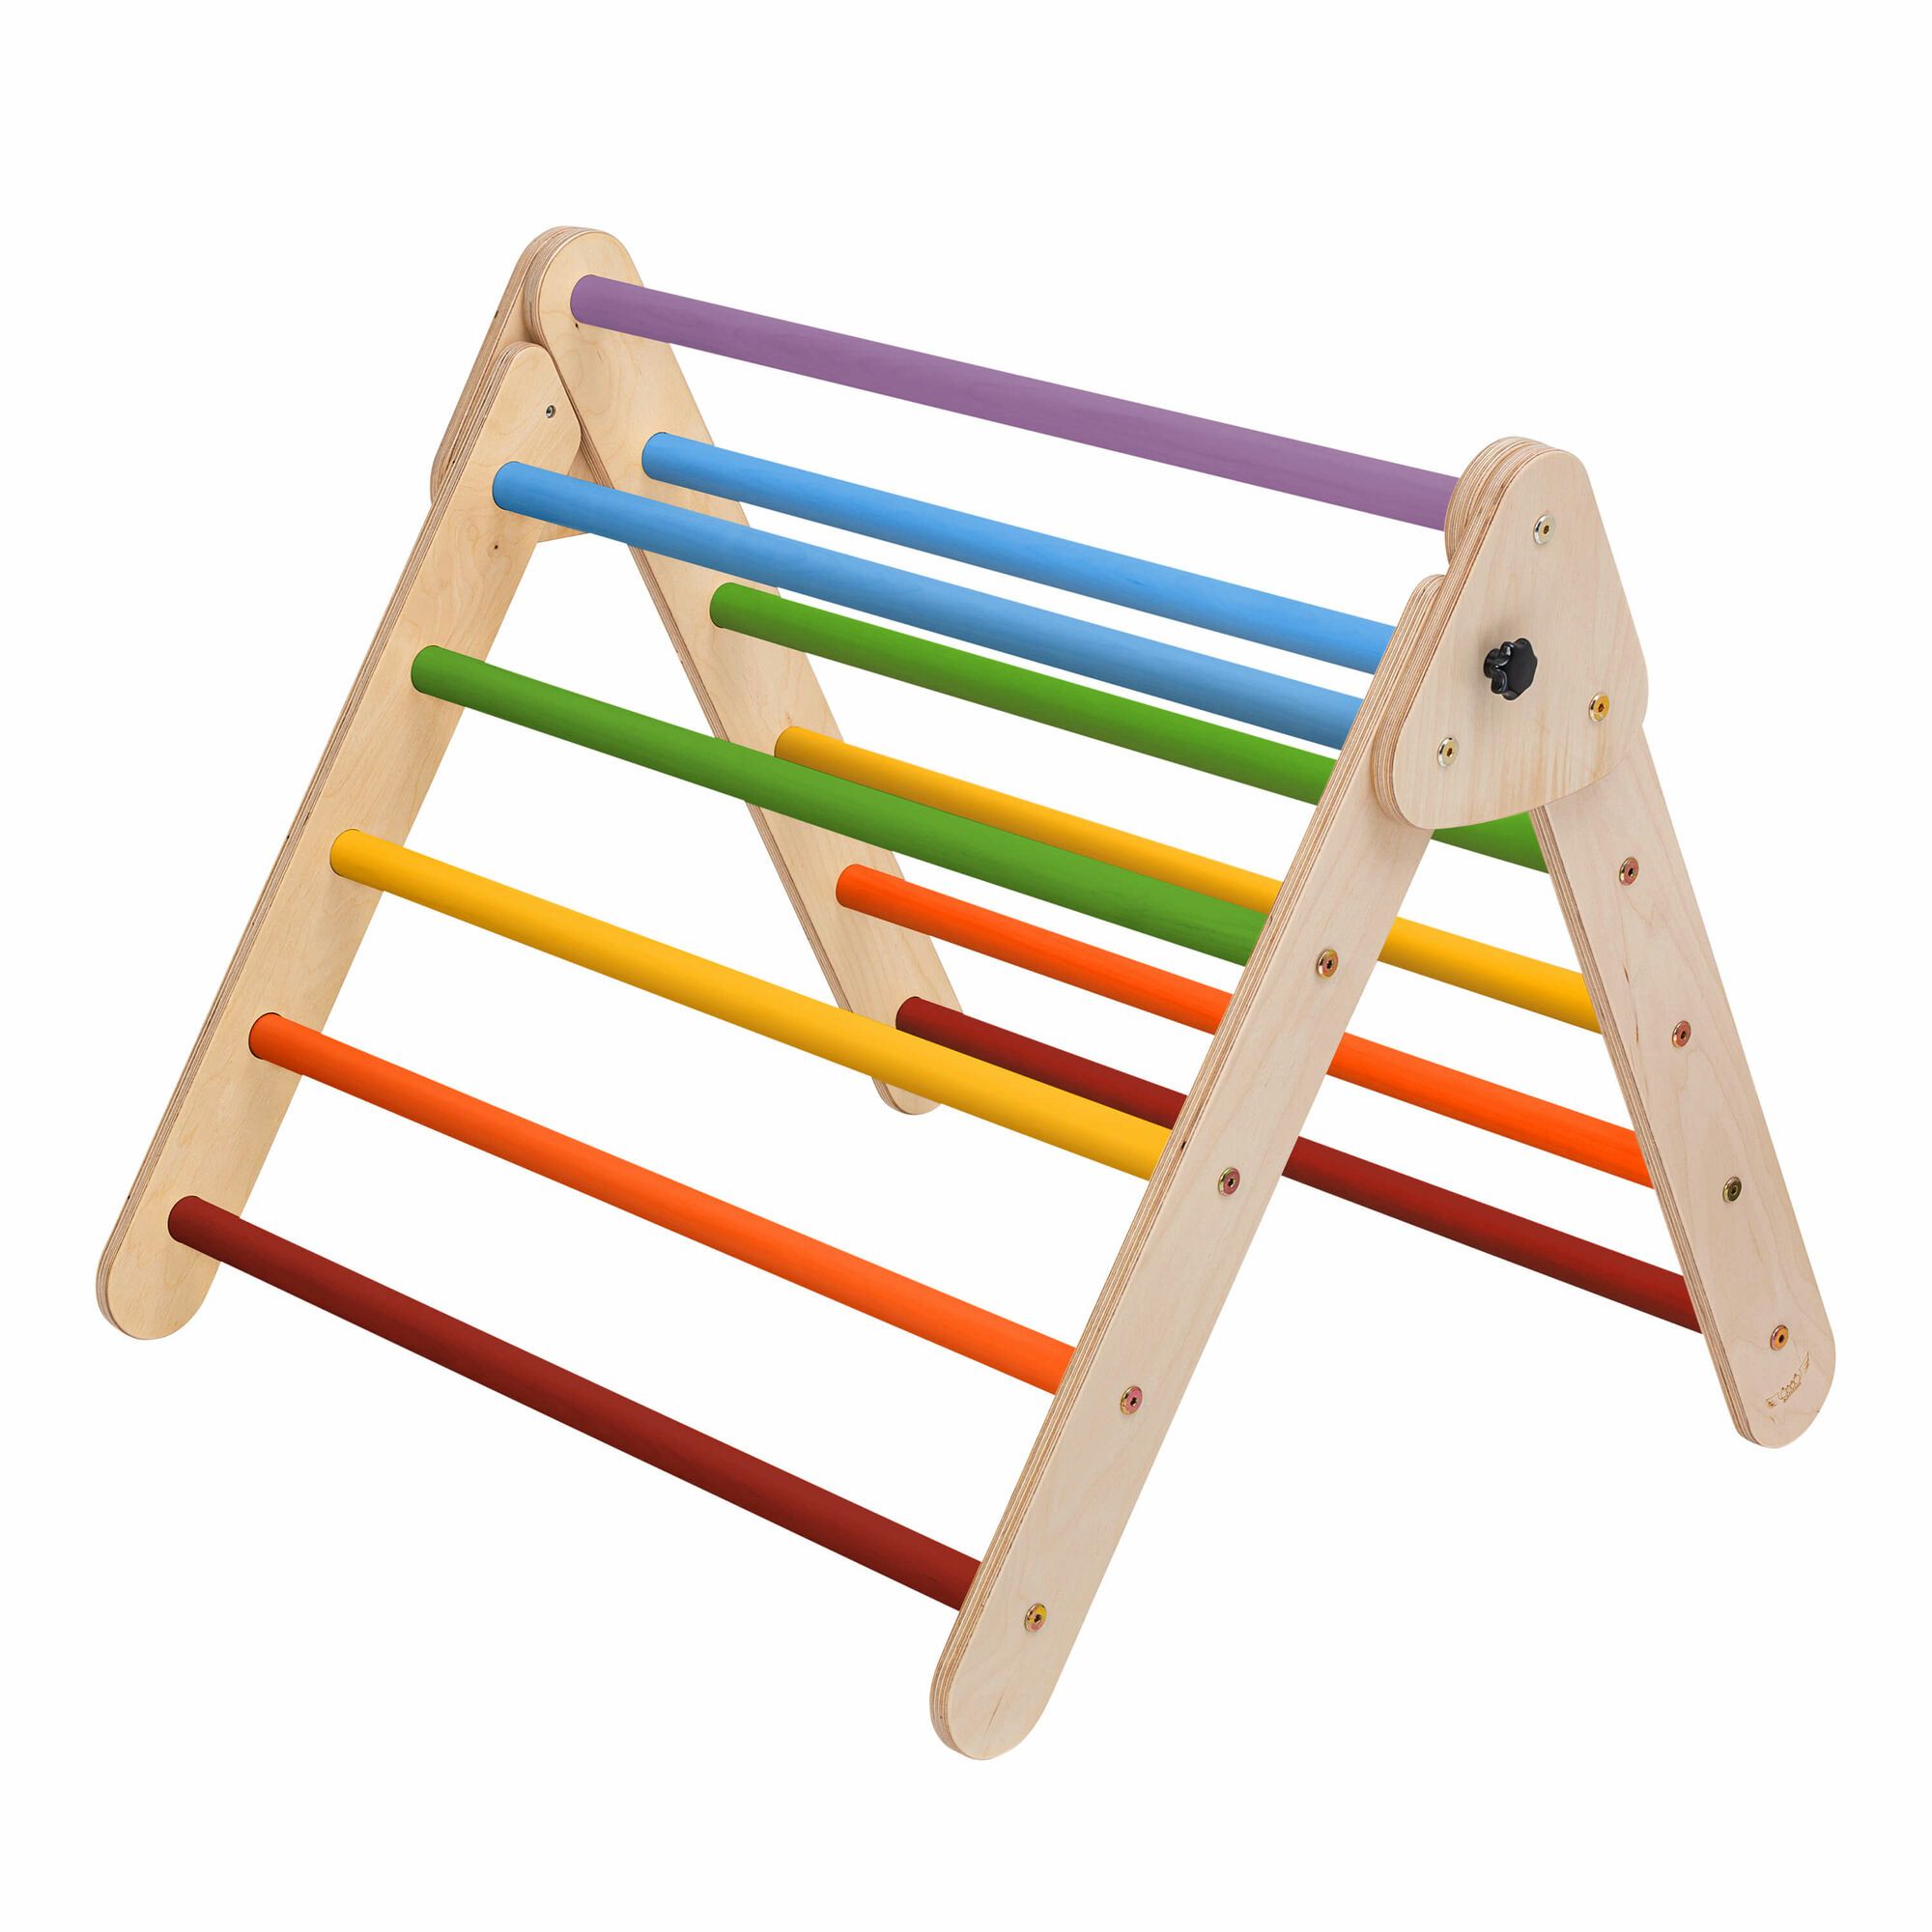 KateHaa Triangle de Pikler en bois avec échelle Multicolore